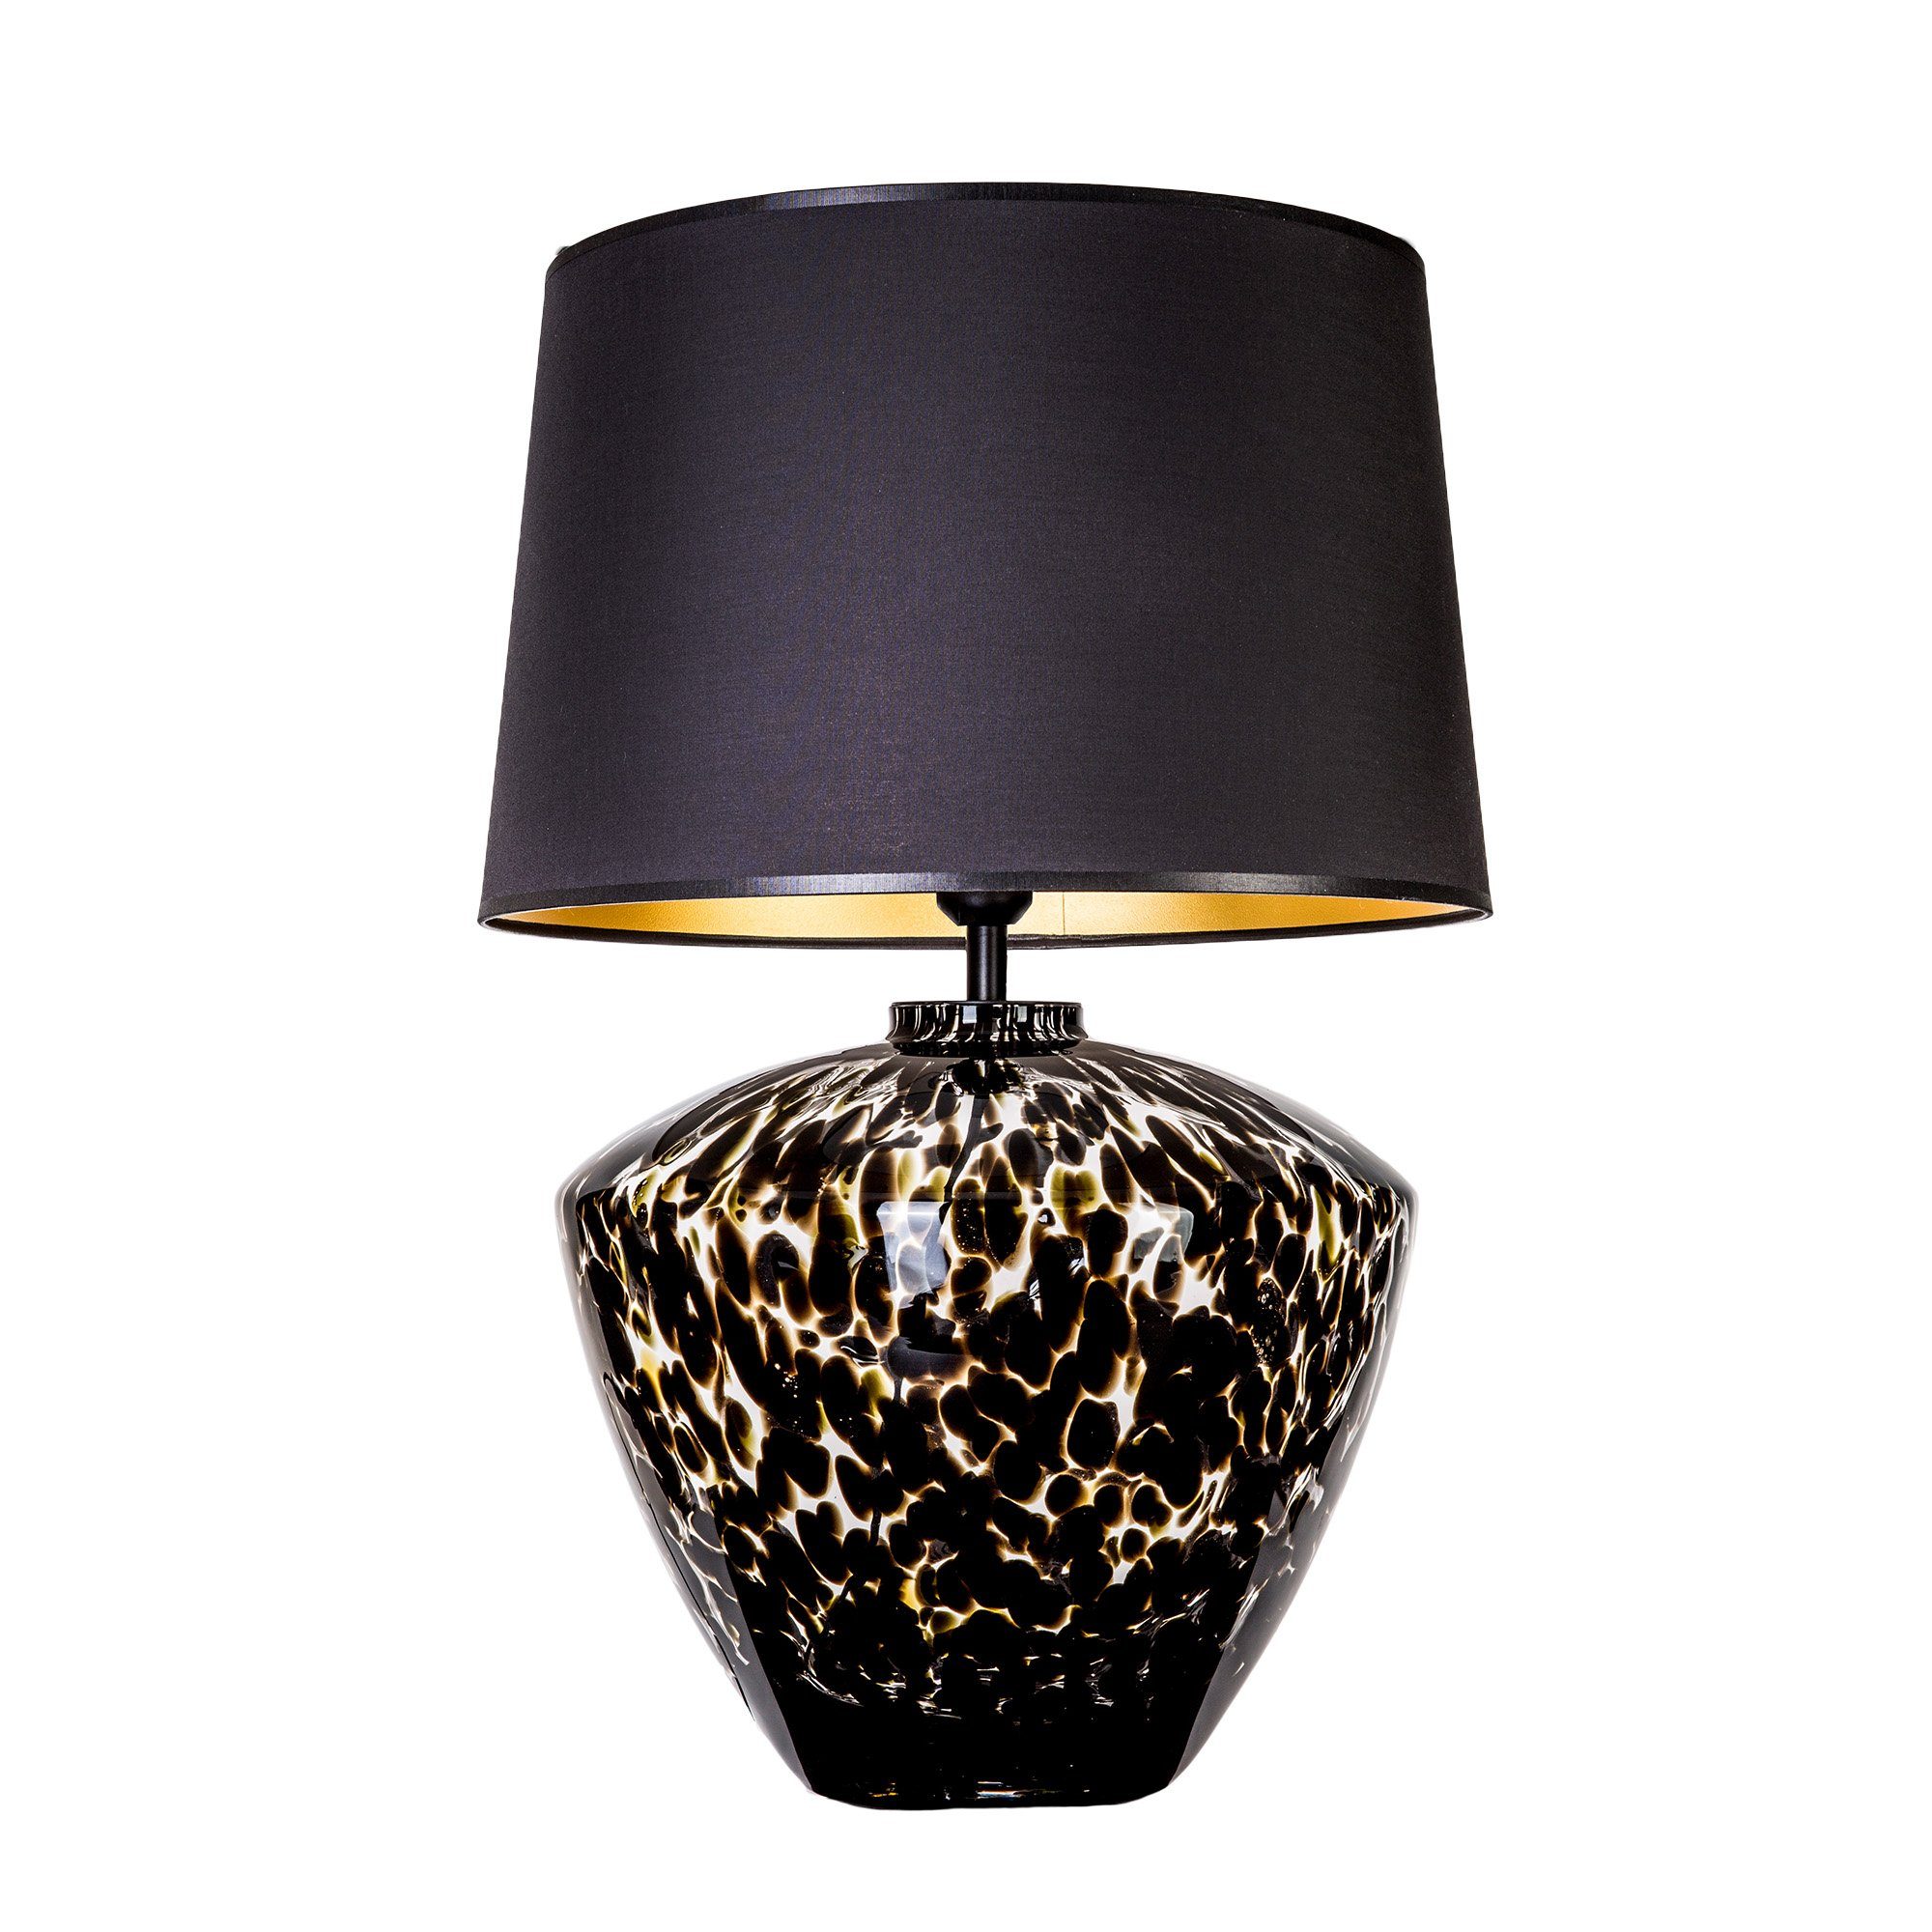 Glaslampe schwarz, Glas Leuchtmittel, Home ohne gefleckt mit Warmweiß, Collection Tischlampe Tischleuchte Glas Lampenschirm Signature mundgeblasenes